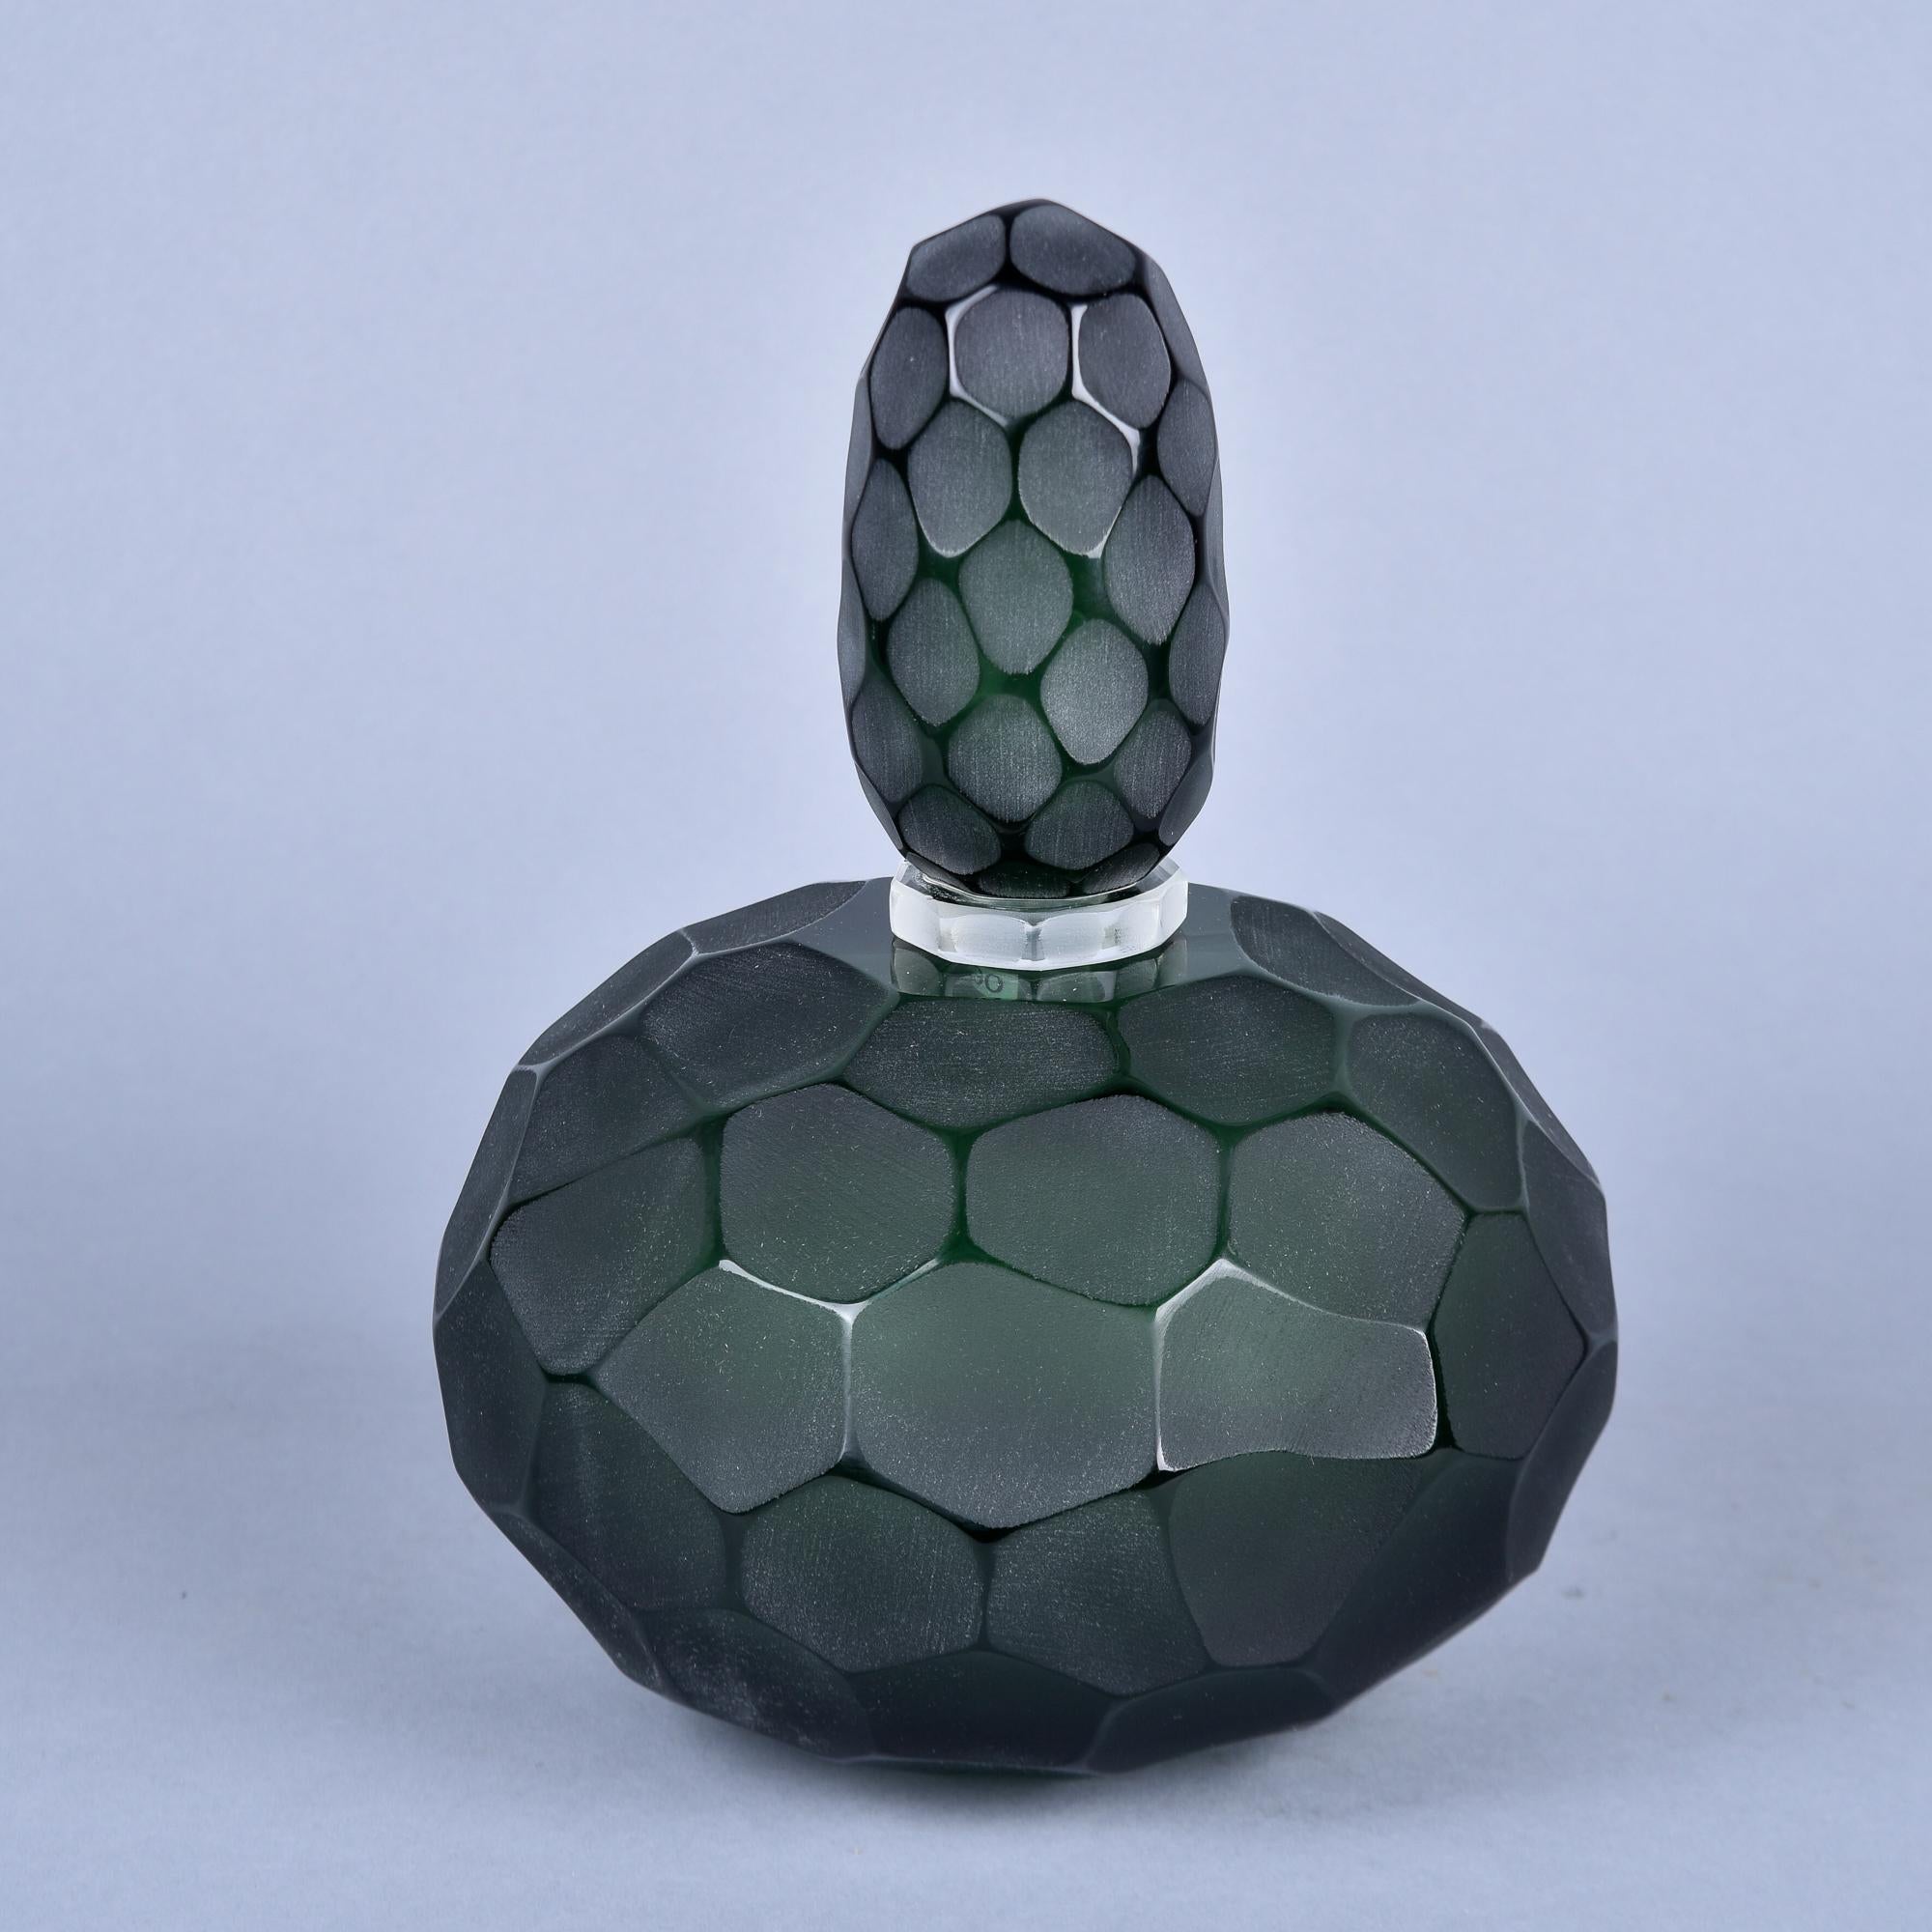 Neu und in Italien von einem unbekannten Murano-Glashersteller hergestellt, ist diese Parfümflasche 11